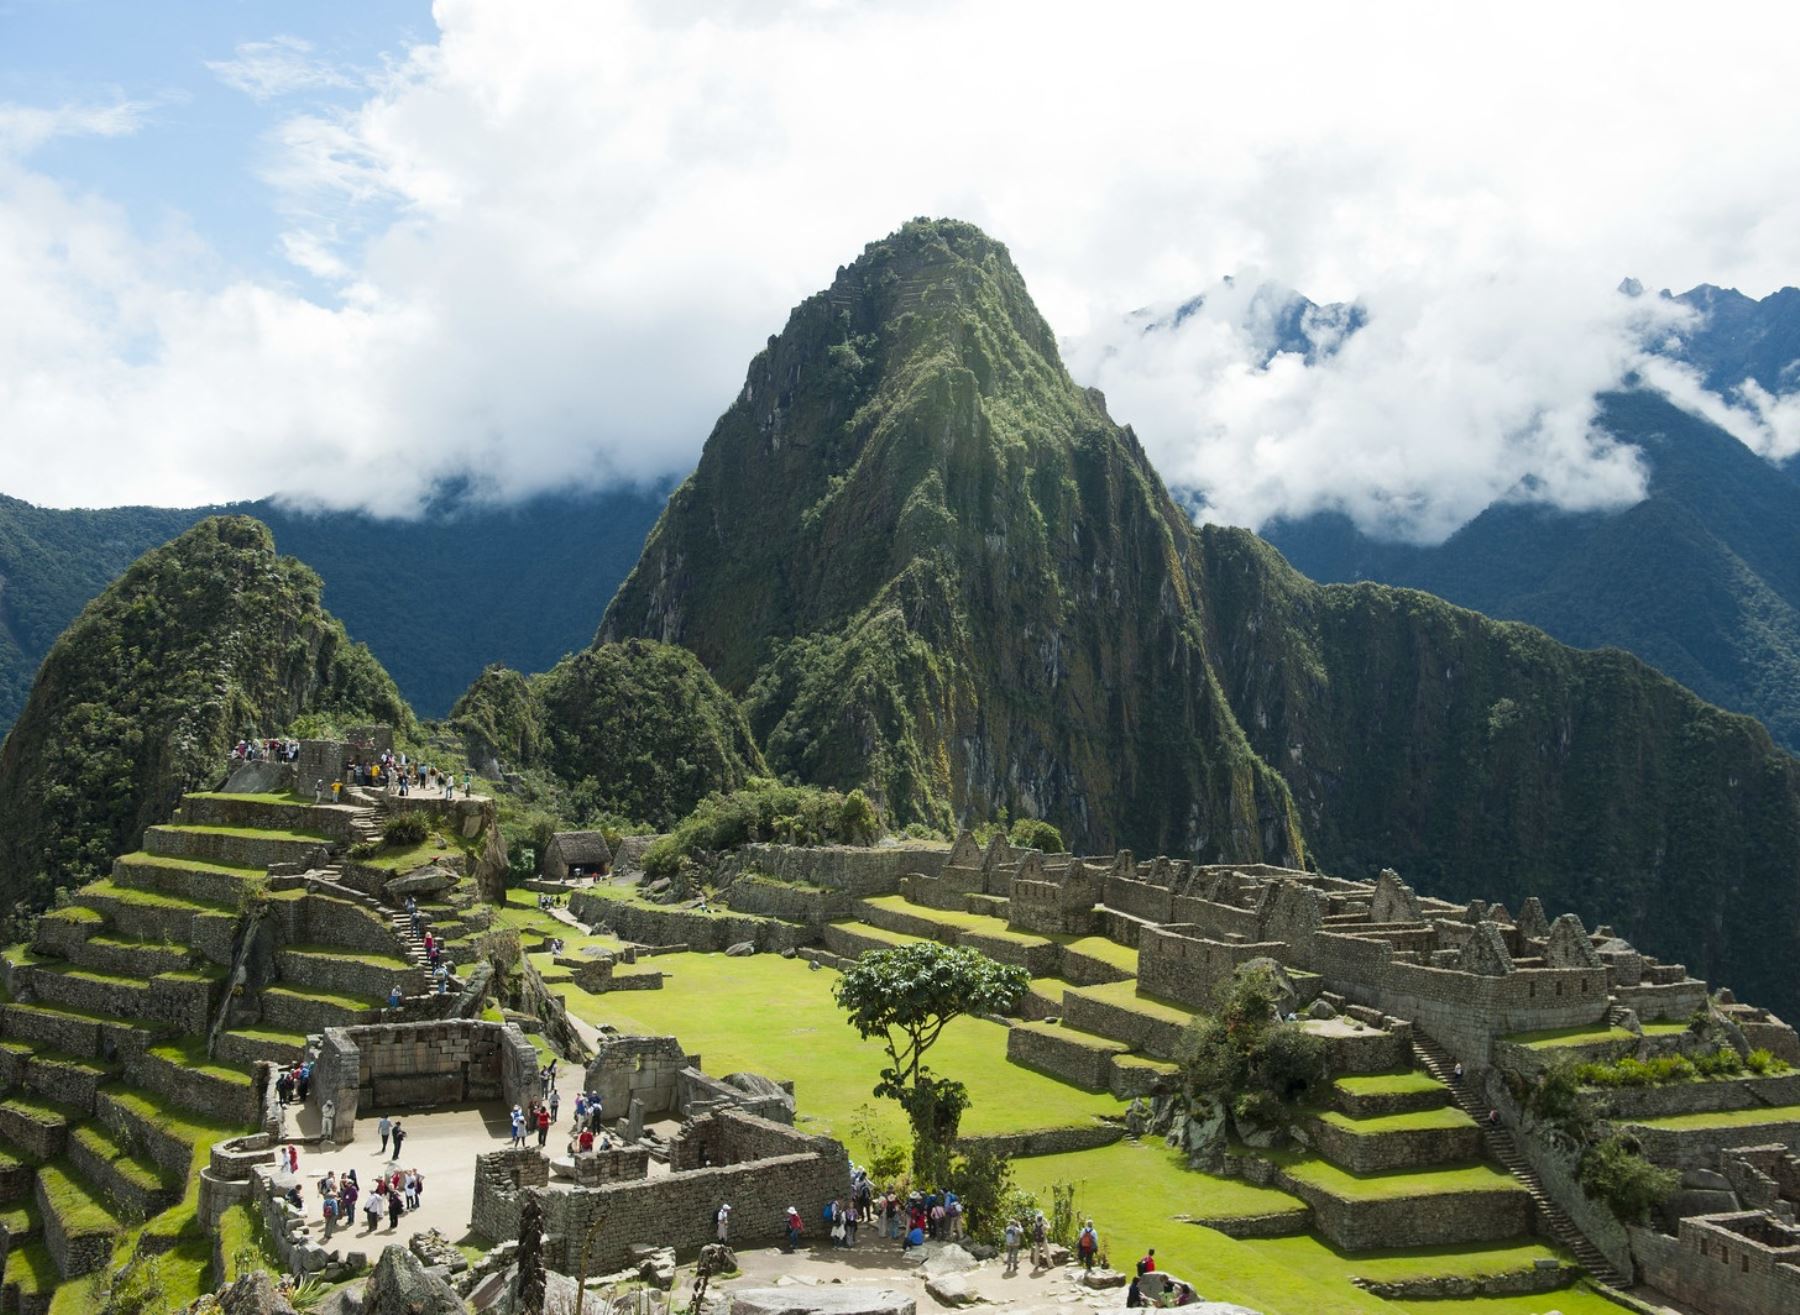 Ministerio de Cultura anuncia que aumentará el aforo en la llaqta de Machu Picchu a 4,400 visitantes al dia. En la actualidad la ciudadela inca recibe un total de 3,400 turistas.